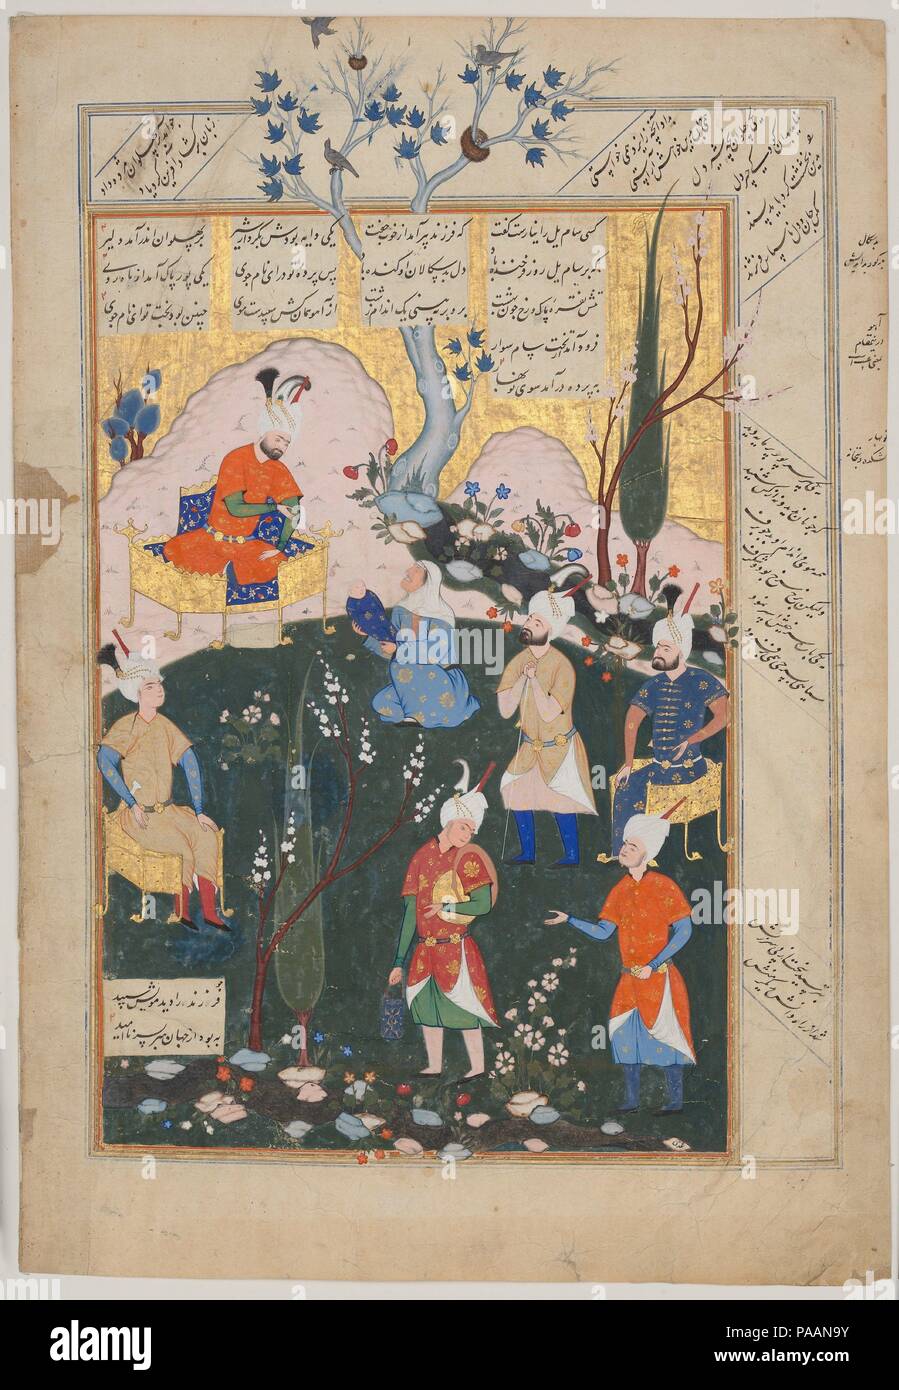 "La nascita di Zal', Folio da un Shahnama (Libro dei Re). Artista: attribuito a Siyavush (ca. 1536-1610). Autore: Abu'l Qasim Firdausi (935-1020). Il dedicatario: Shah Isma'il (r. 1576-77). Dimensioni: H. 17 3/4 in. (45,1 cm) W. 12 1/8 in. (30,8 cm). Data: 1576-77. Questa pagina proviene da un manoscritto di Persiano epica, il Shahnama (Libro dei Re), prodotta per Shah Isma'il II (r. 1576-77). Esso raffigura una scena dal racconto della nascita di Zal, che sarebbe diventato uno dei più grandi eroi del guerriero del poema epico. Dopo la sua nascita, Zal è stata respinta e lasciato a morire nel deserto da suo padre Sam, qui pic Foto Stock